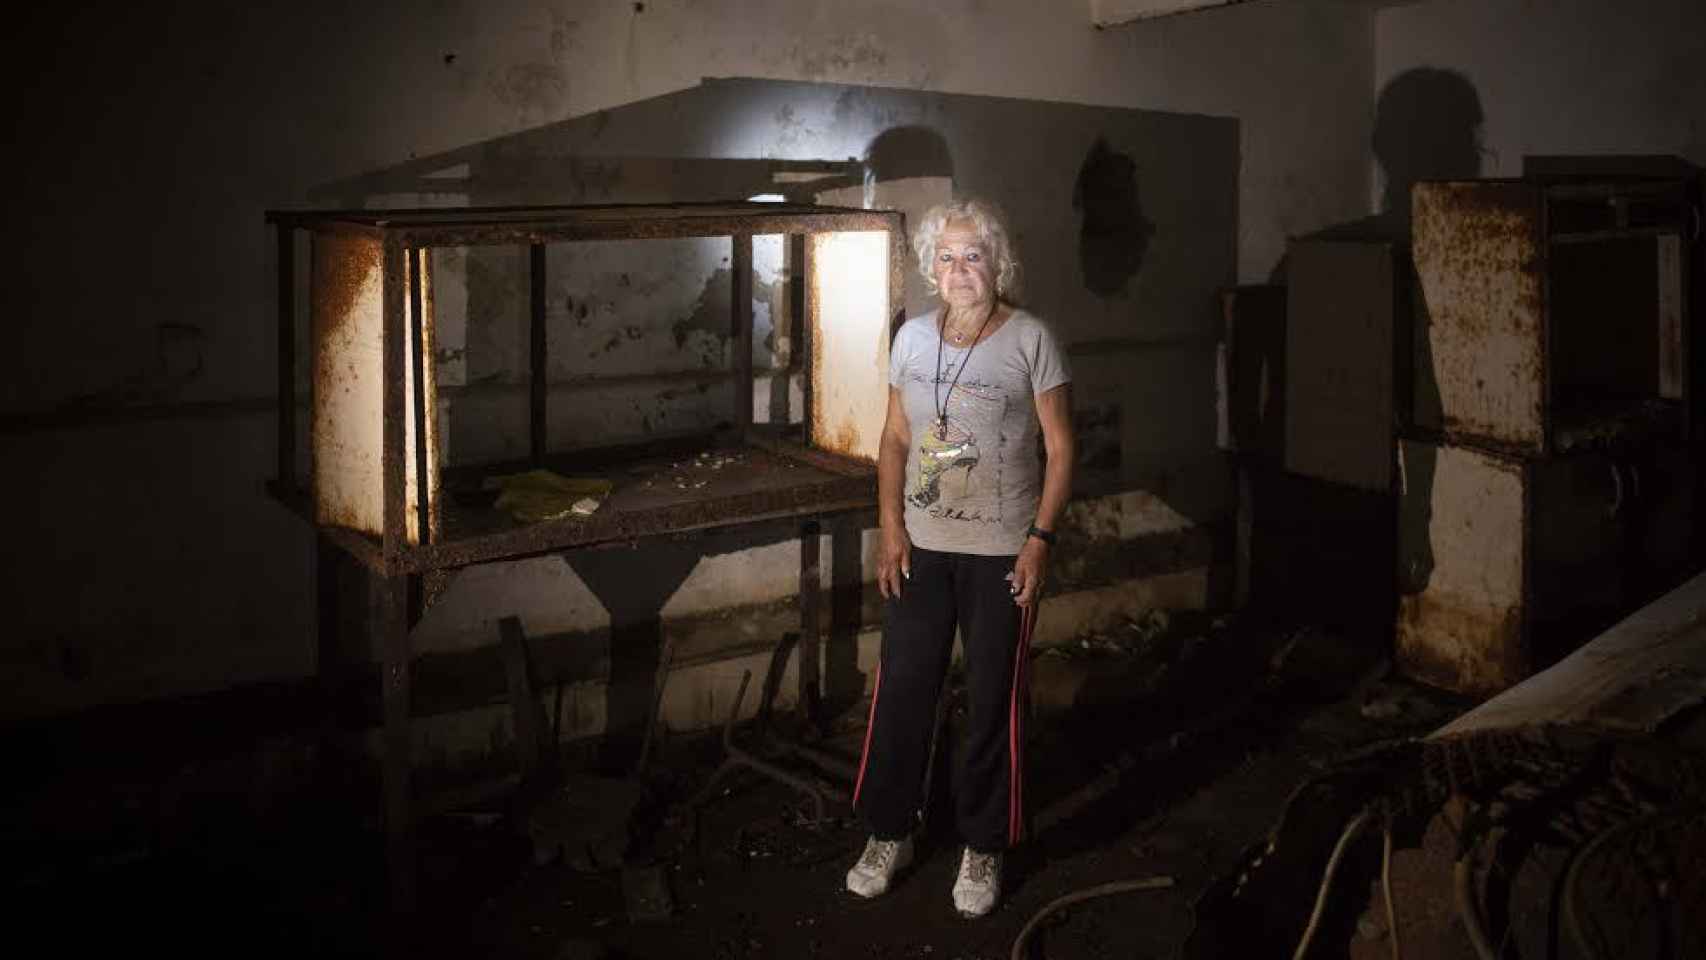 Ana Tirado en el interior del sótano del antiguo hospital municipal de La Línea de la Concepción (Cádiz). A su espalda se ve lo que parece ser una antigua cuna.